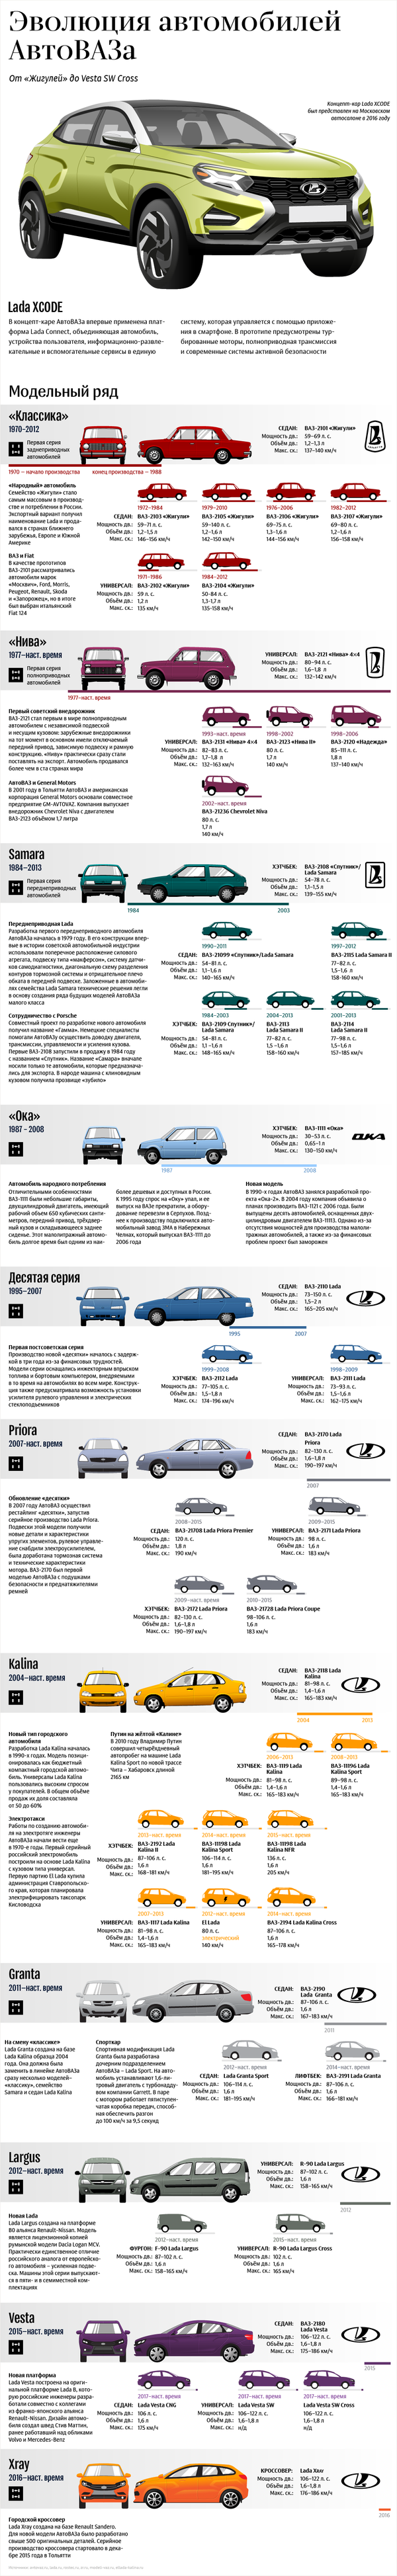 Эволюция автомобилей АвтоВАЗа - Sputnik Узбекистан